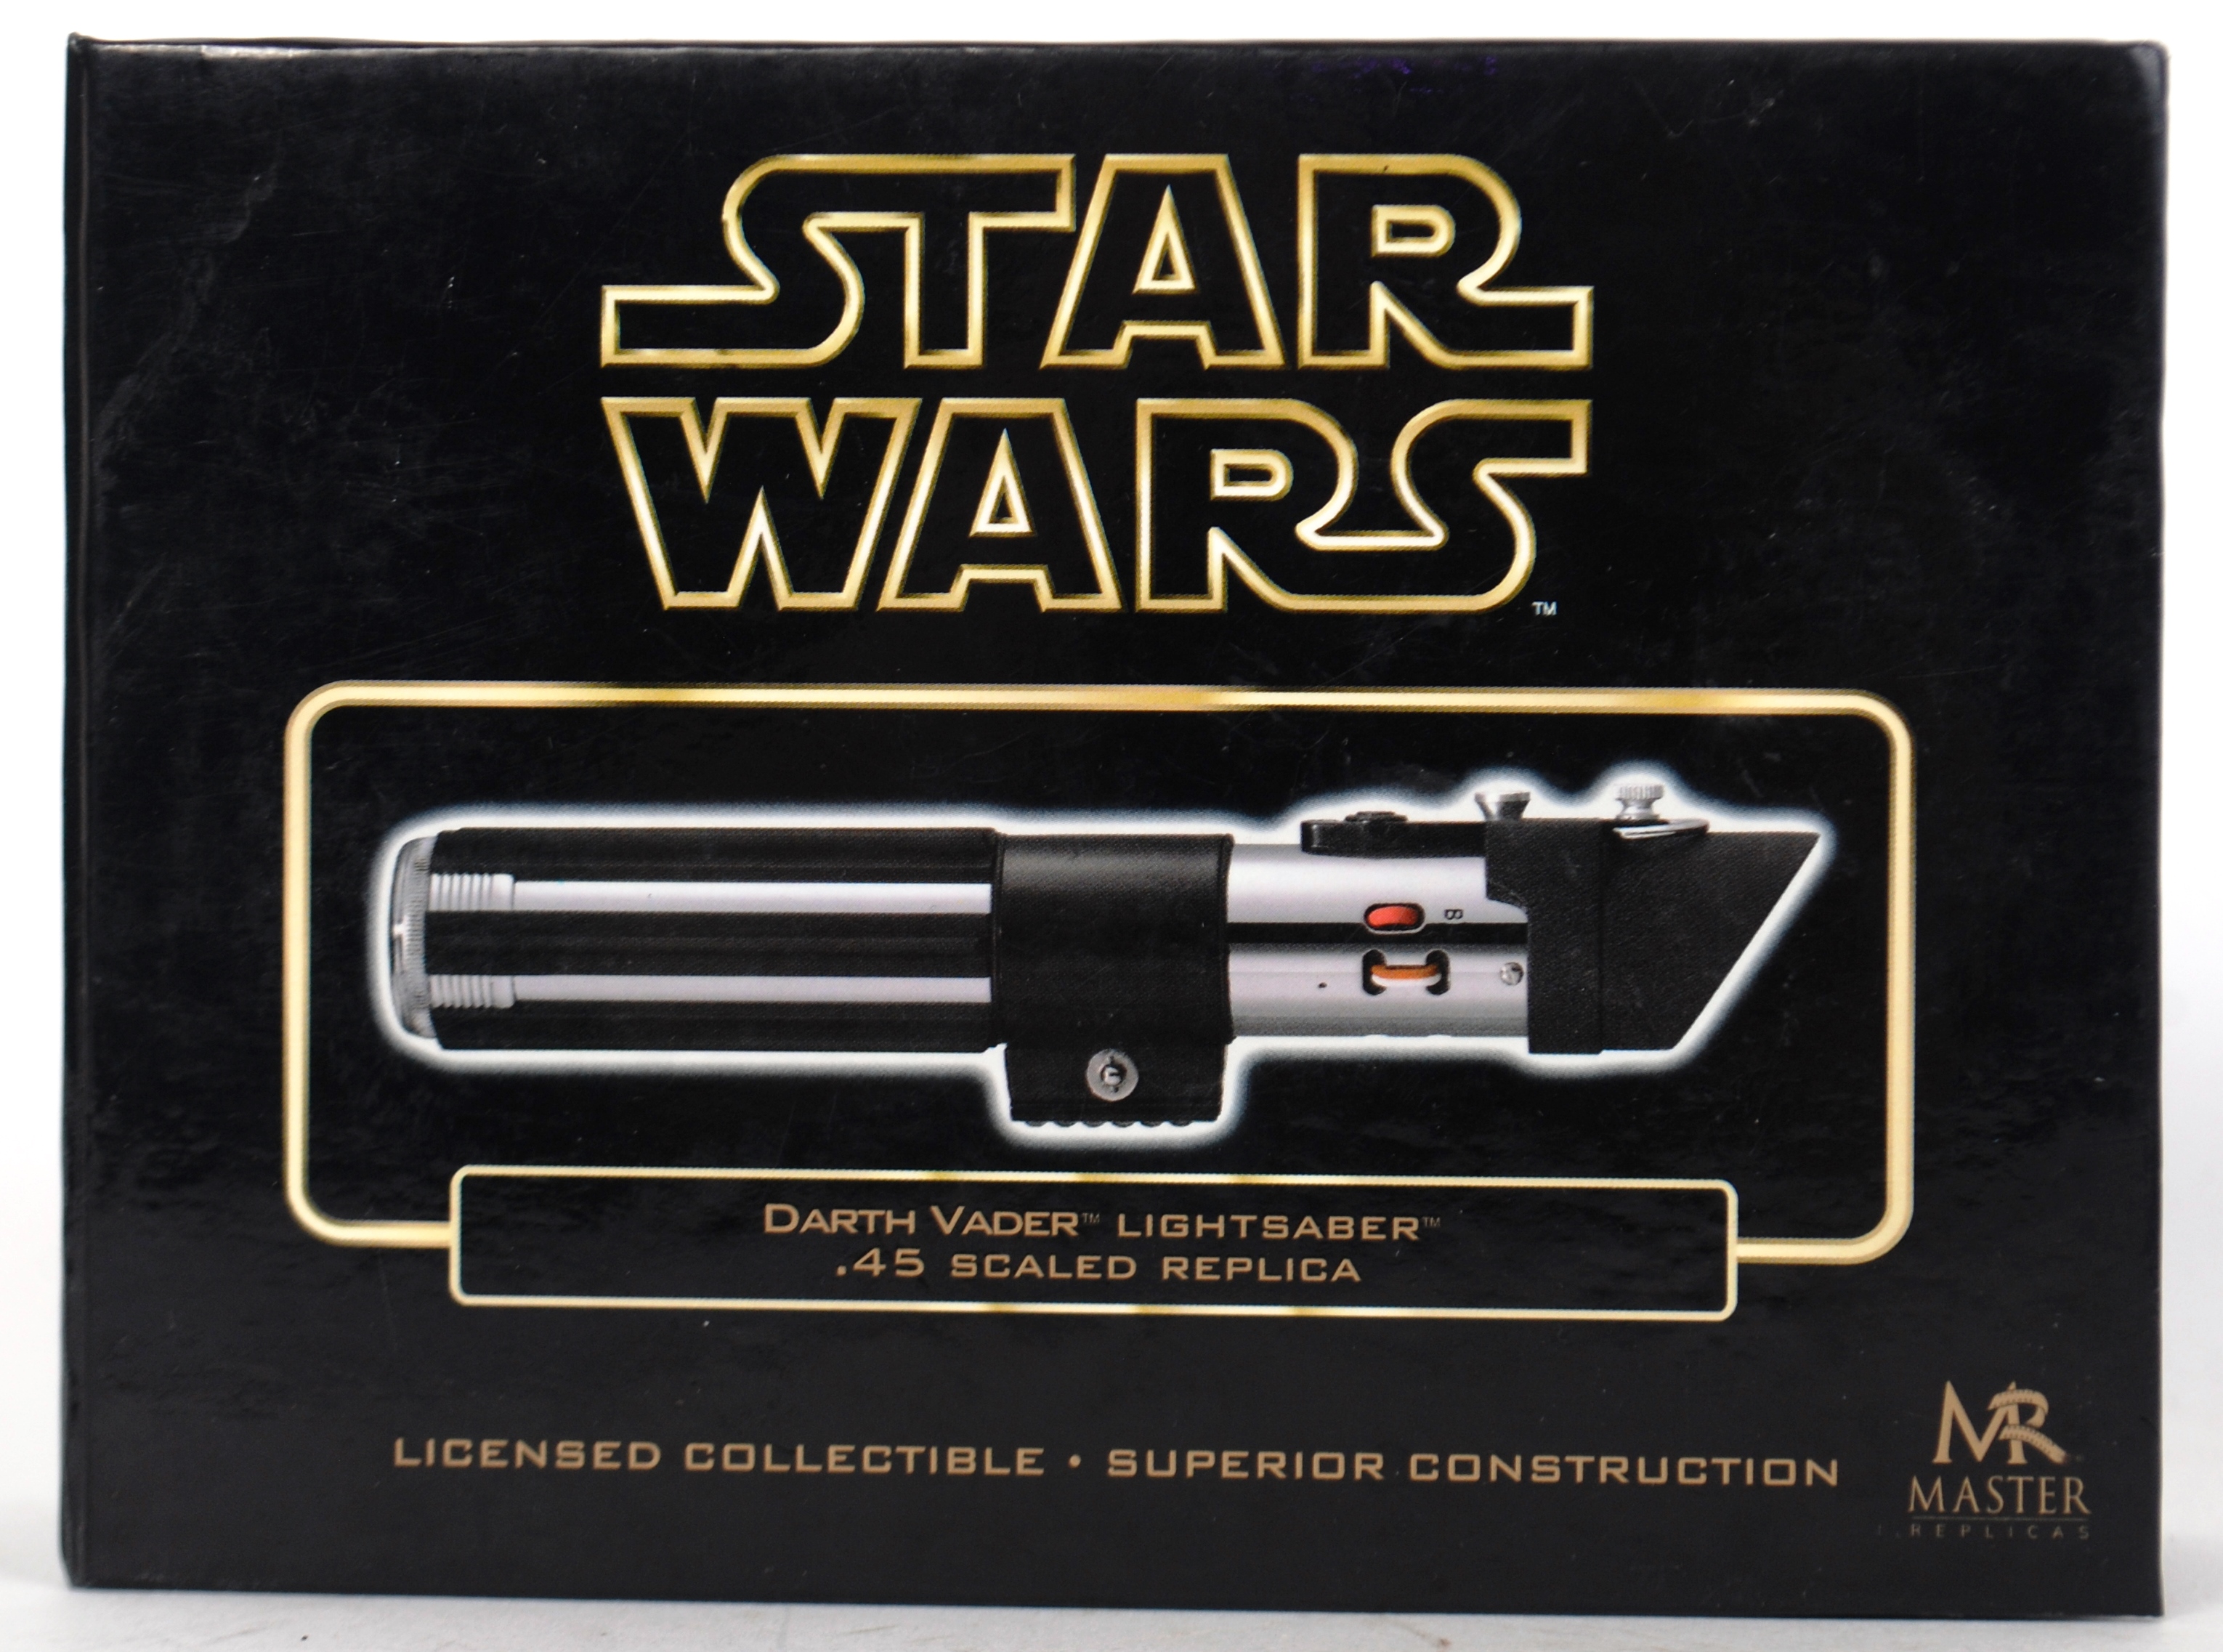 MASTER REPLICA LIGHTSABER: An original Star Wars .45 scale Master Replica Lightsaber.